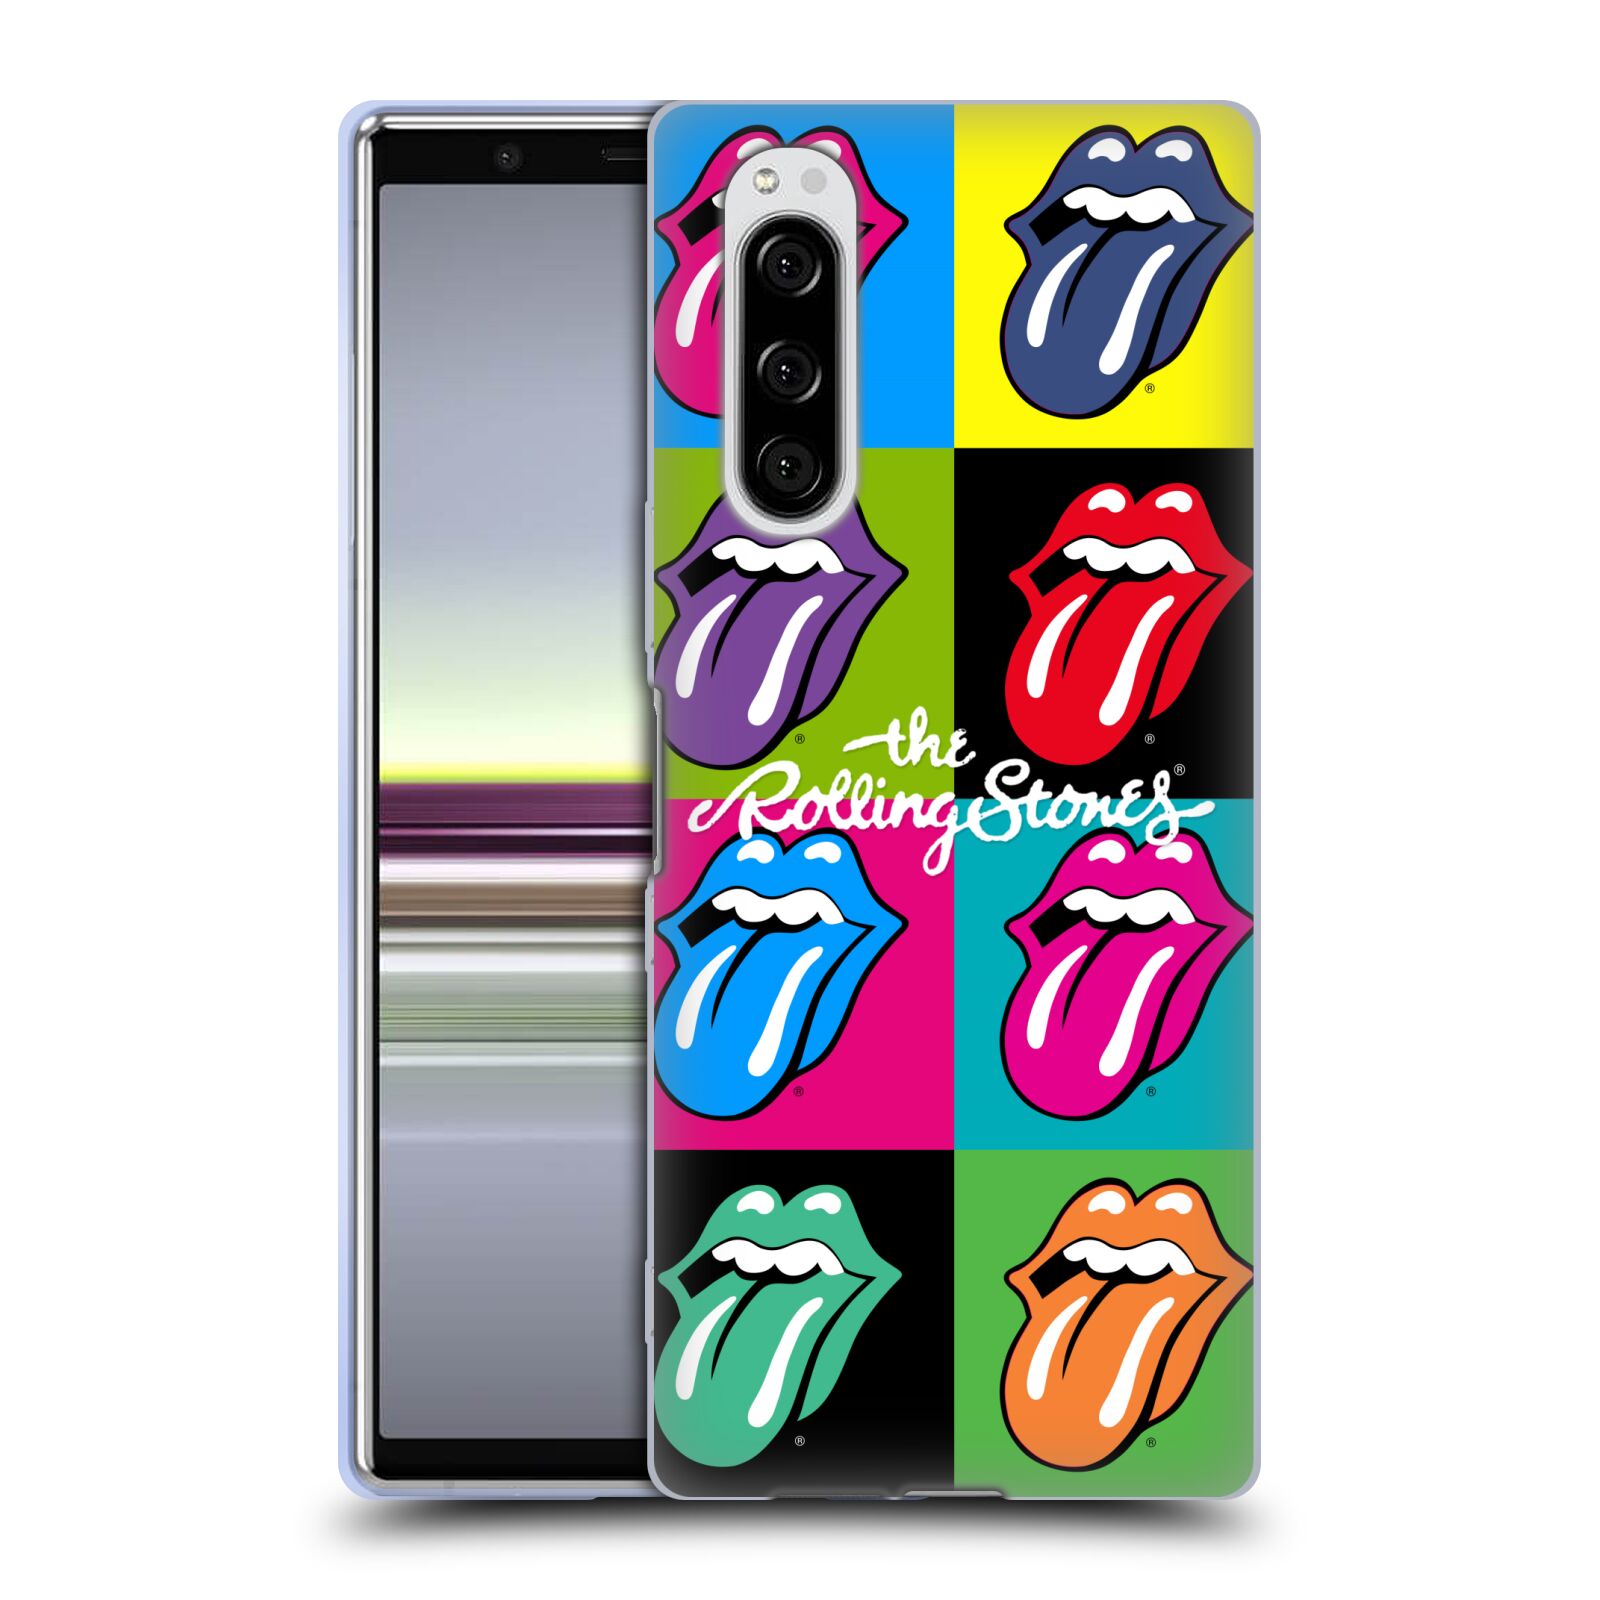 Silikonové pouzdro na mobil Sony Xperia 5 - Head Case - The Rolling Stones - Pop Art Vyplazené Jazyky